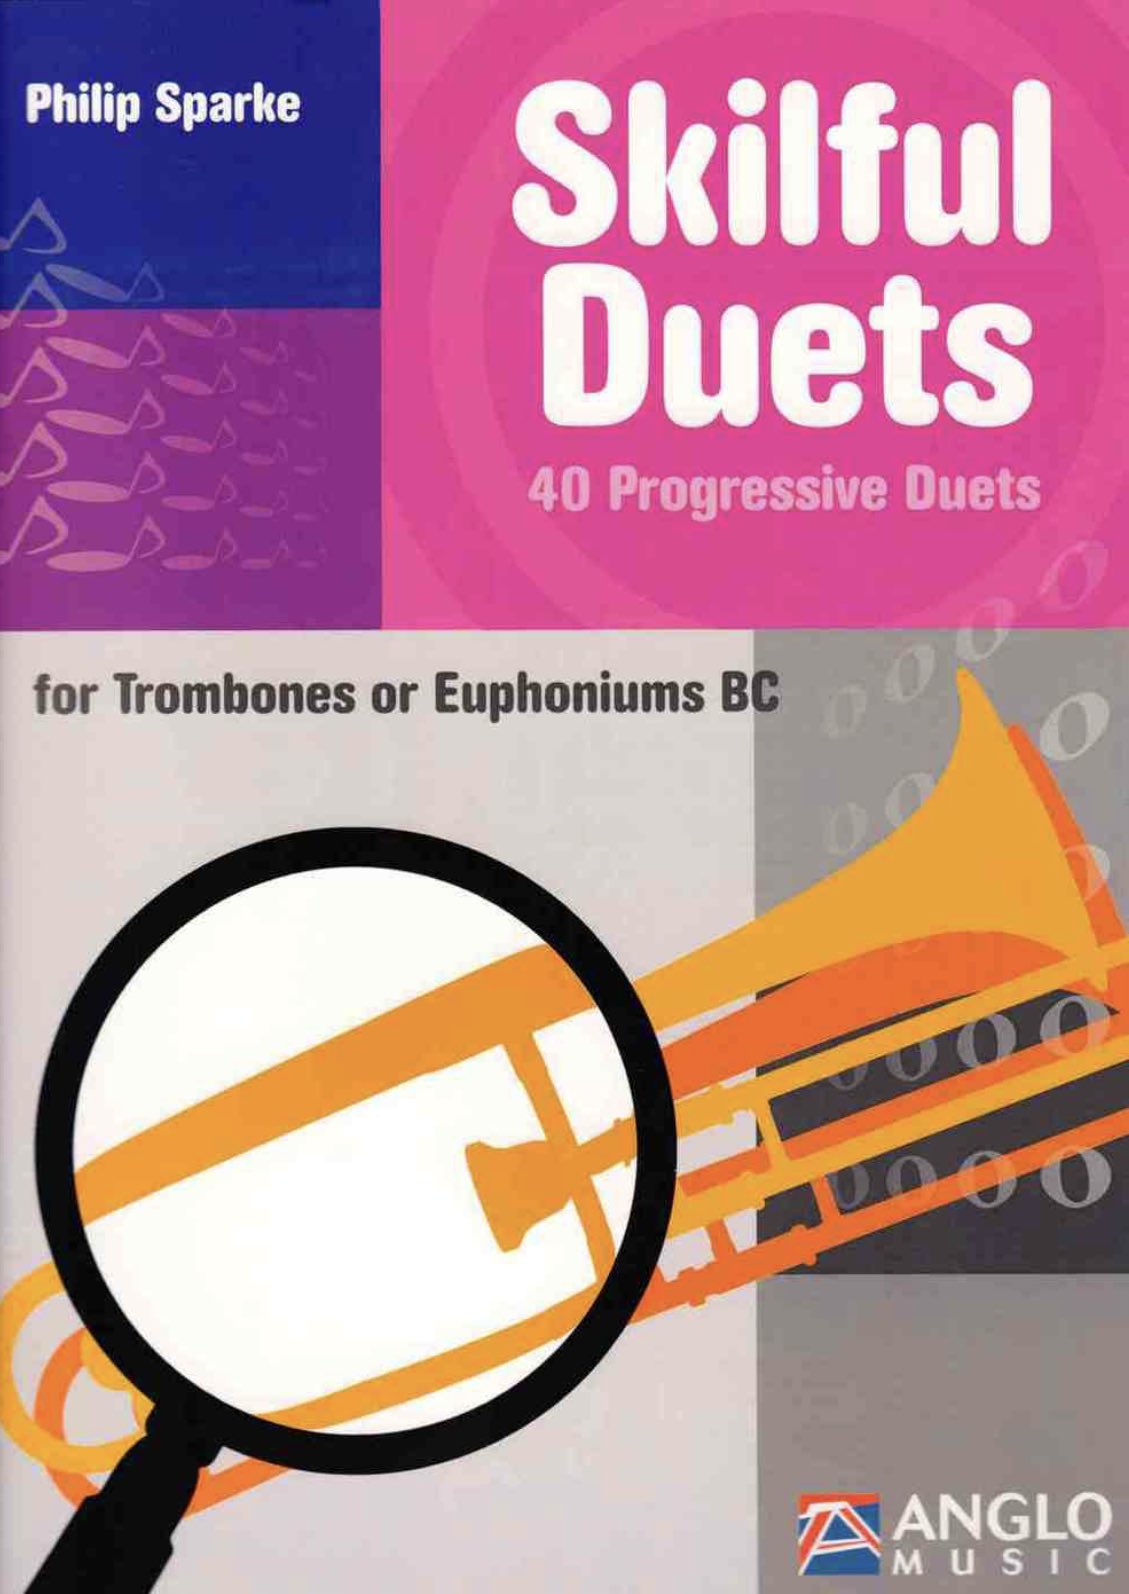 Super Duets - Philip Sparke - 15 progressive duets for trombones or euphonium - BC